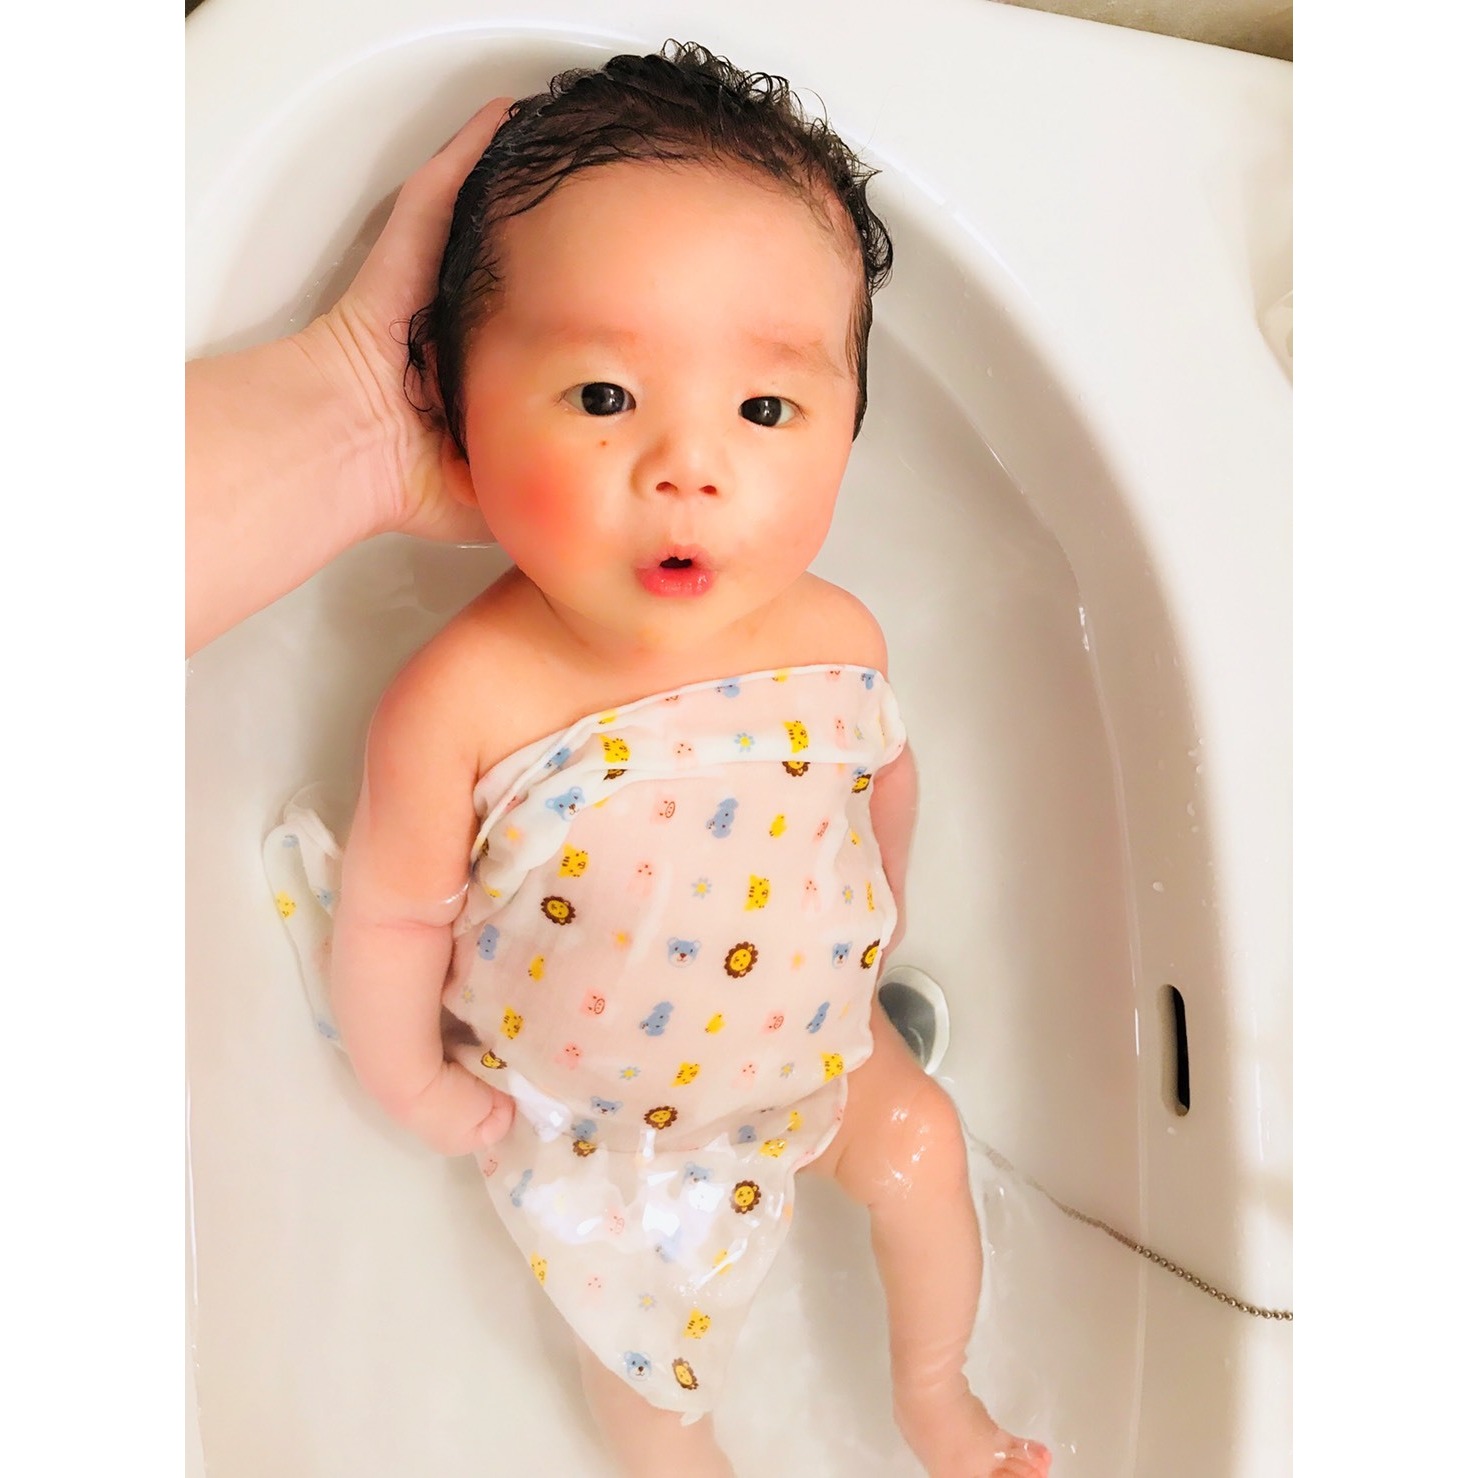 生後1ヶ月の赤ちゃんのお風呂デビュー前にスッキリ安心クリーニング ハウスクリーニング 鳥山修史 マイベストプロ神戸